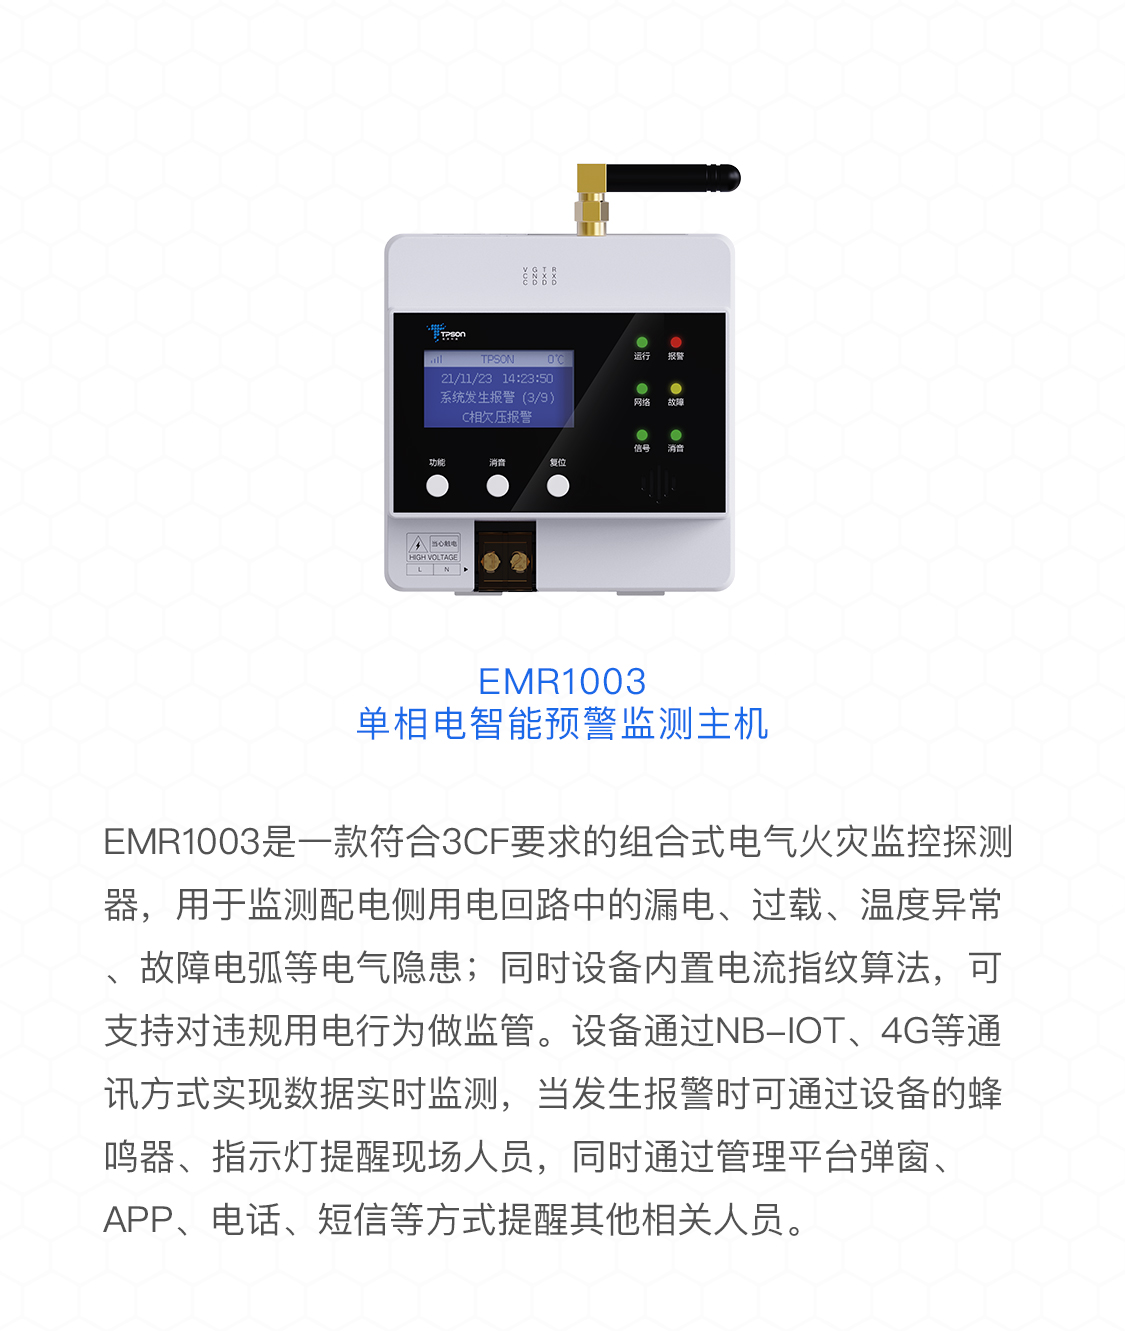 EMR1003单相电智能预警监测主机产品介绍